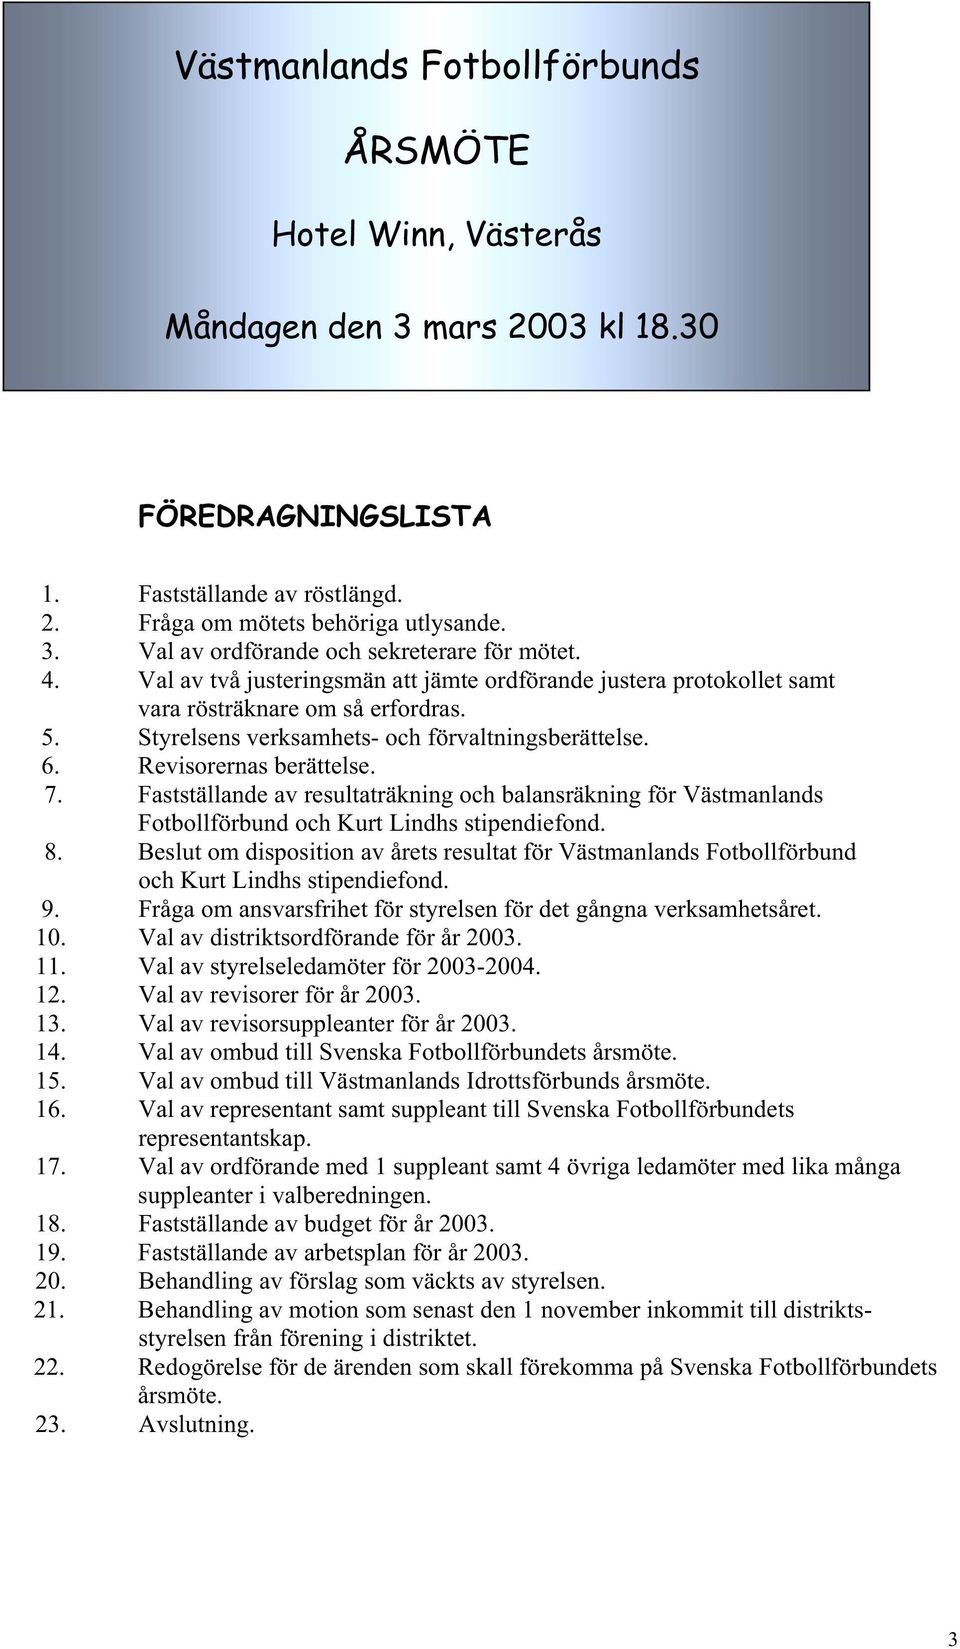 Fastställande av resultaträkning och balansräkning för Västmanlands Fotbollförbund och Kurt Lindhs stipendiefond. 8.